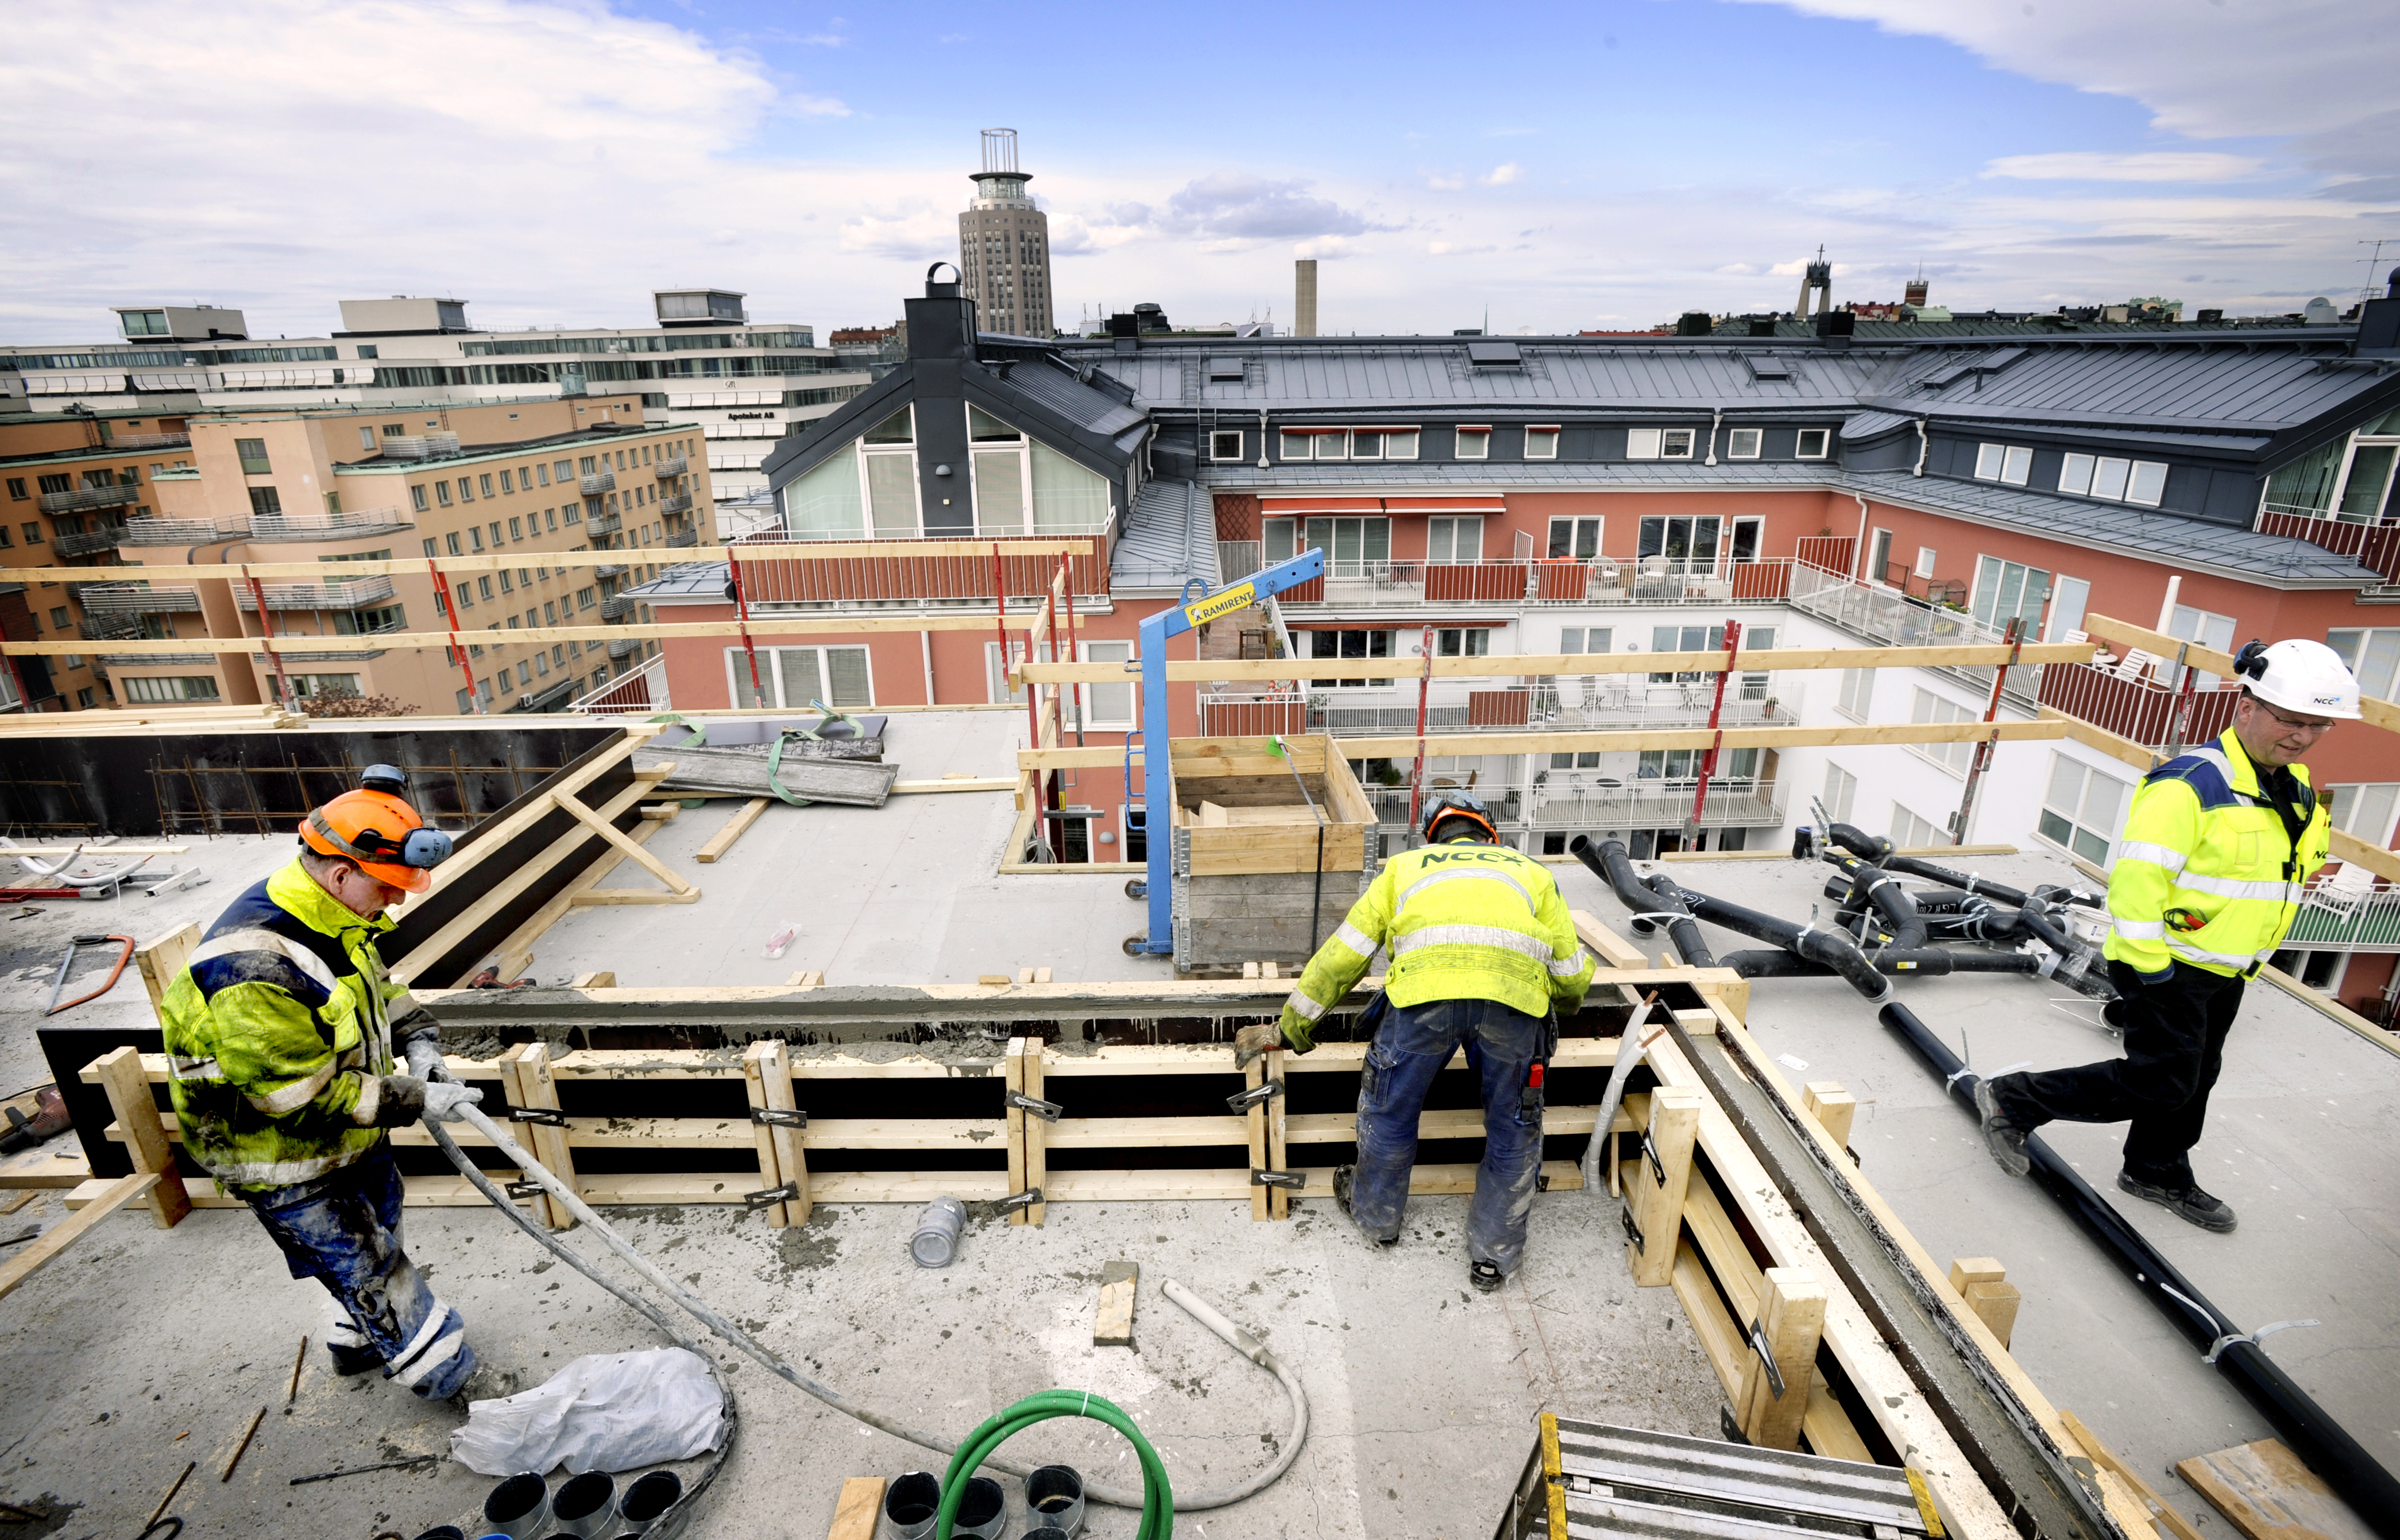 Fler och fler studenter söker sig till Stockholm - färre och färre får en studentbostad. Under 2011 planerades noll nya bostäder enligt en ny rapport.